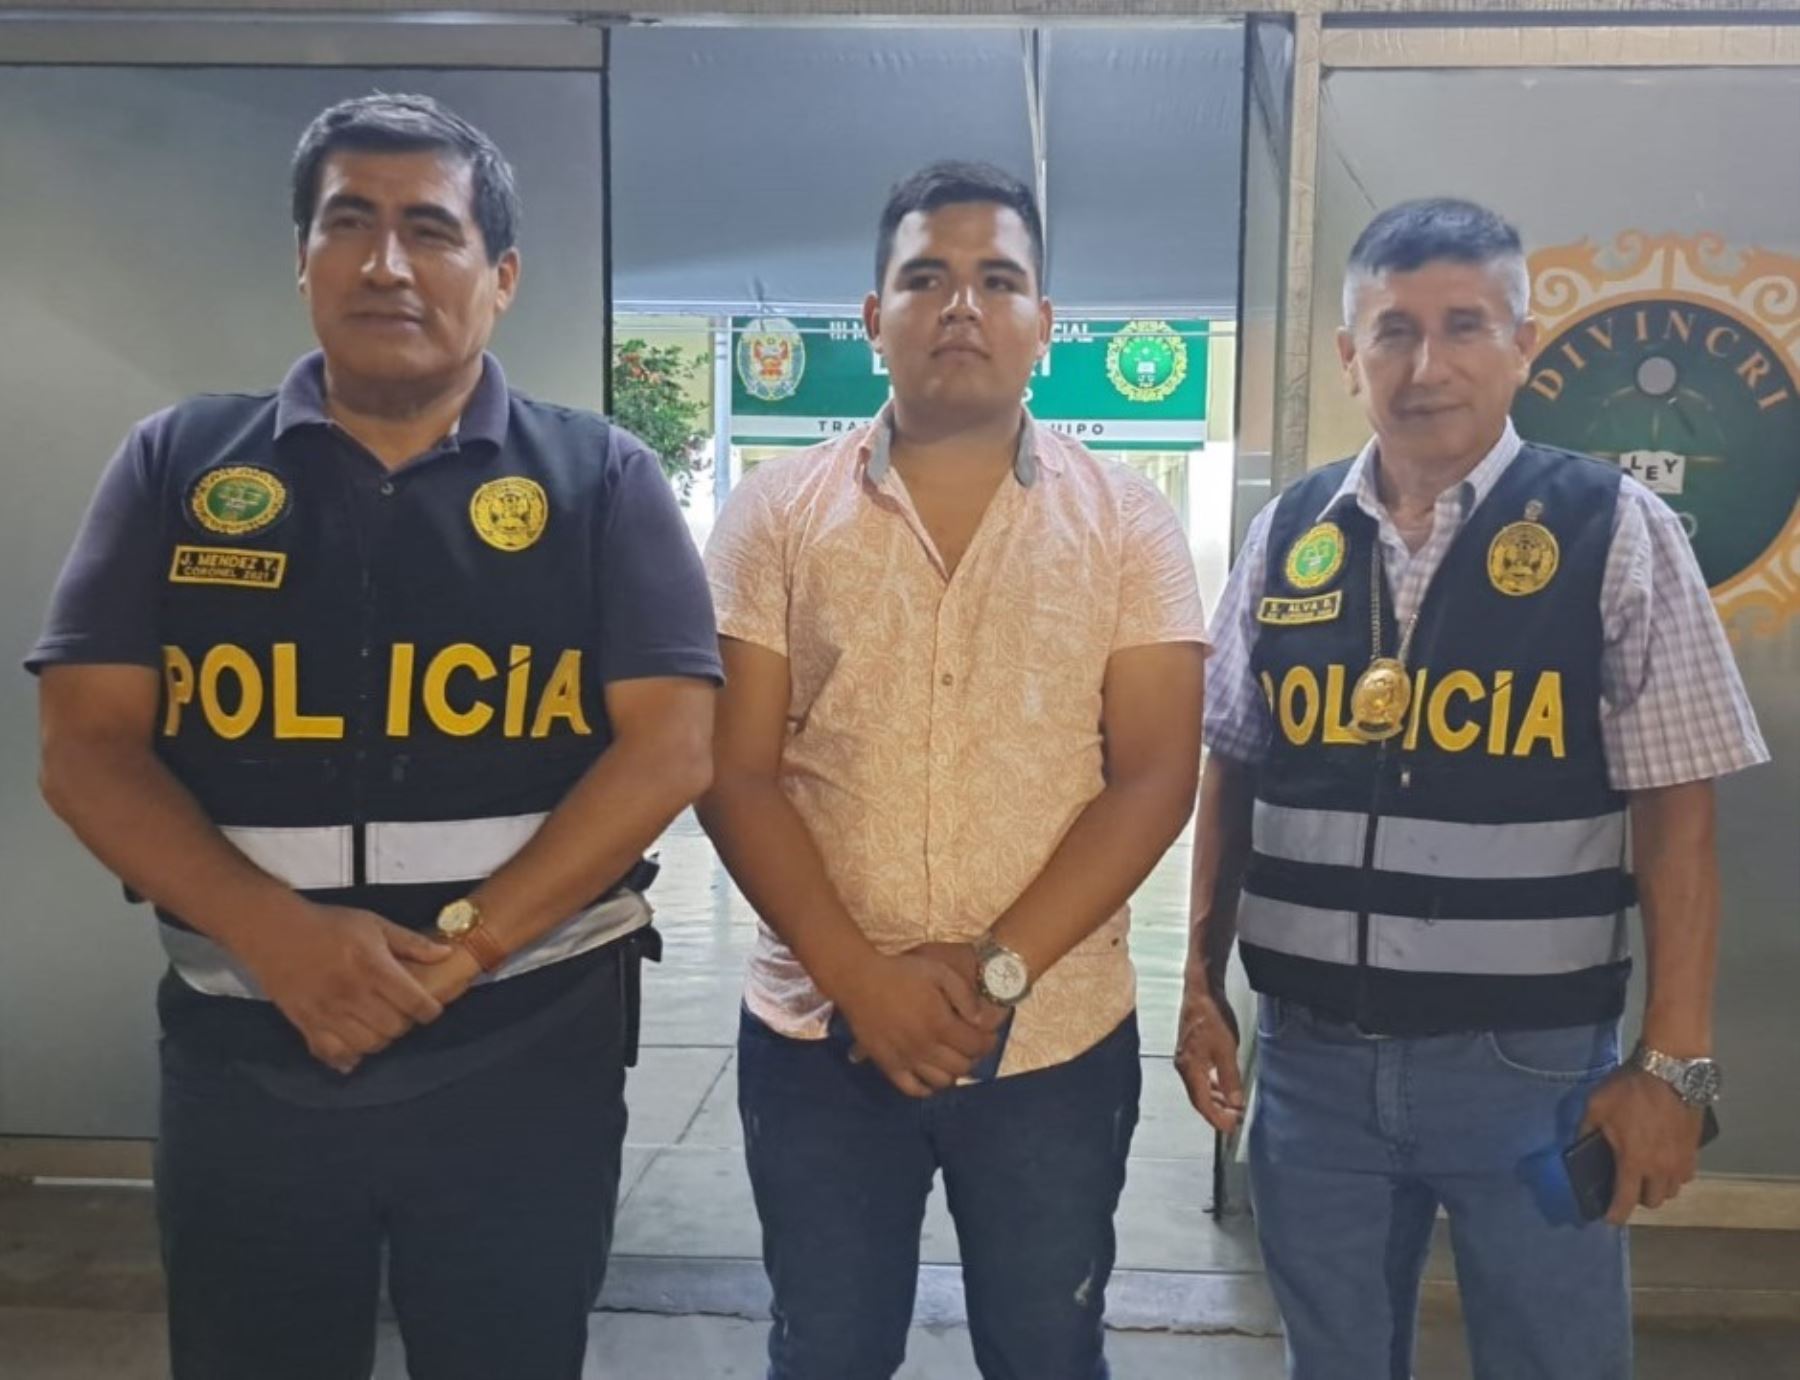 El alcalde del distrito de La Cuesta, Diego Hernán Rodríguez Fernández, recibió el apoyo de la Policía Nacional tras ser víctima de amenazas y extorsión.